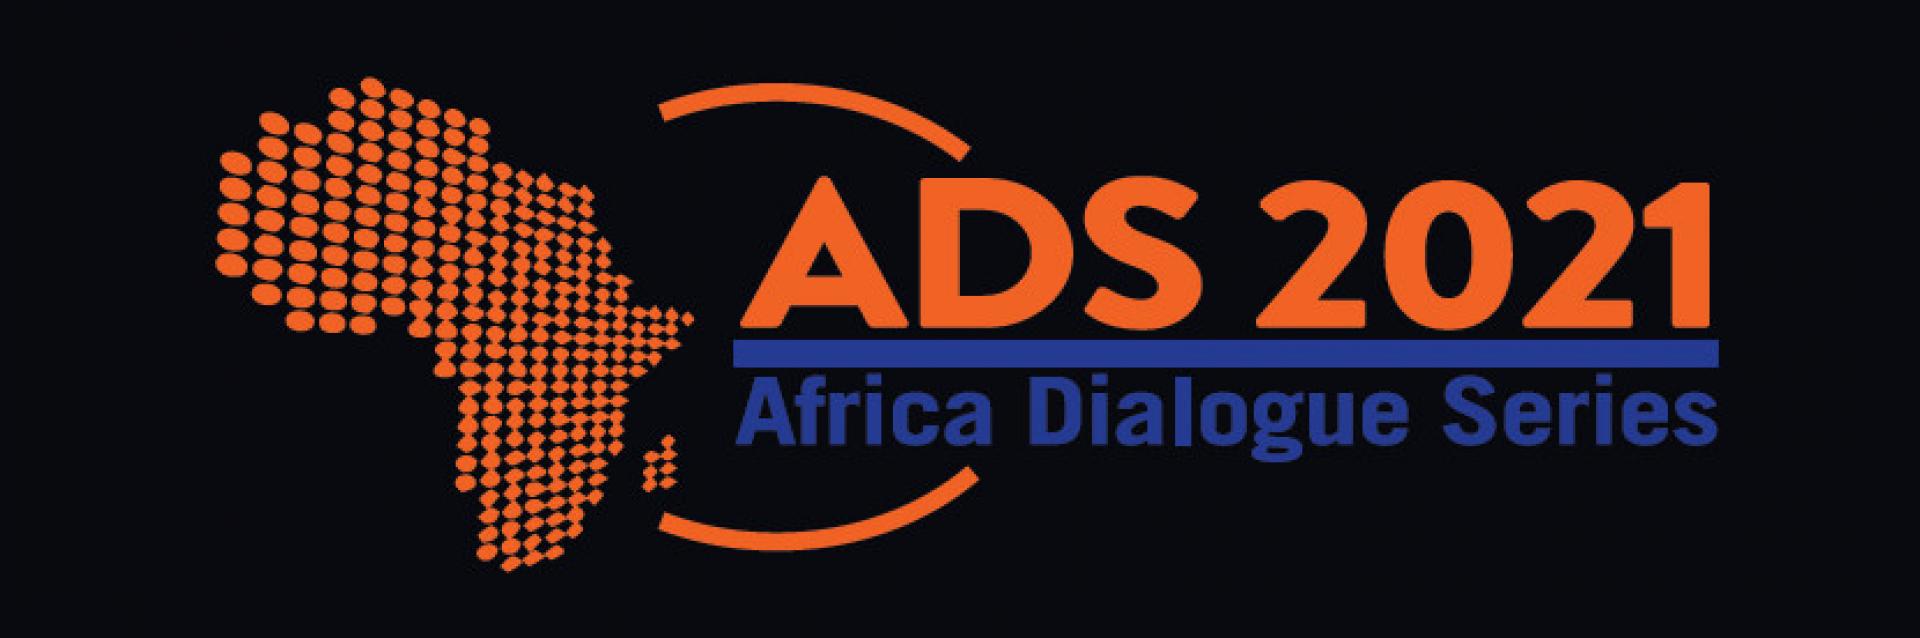 Africa Dialogue Series 2021